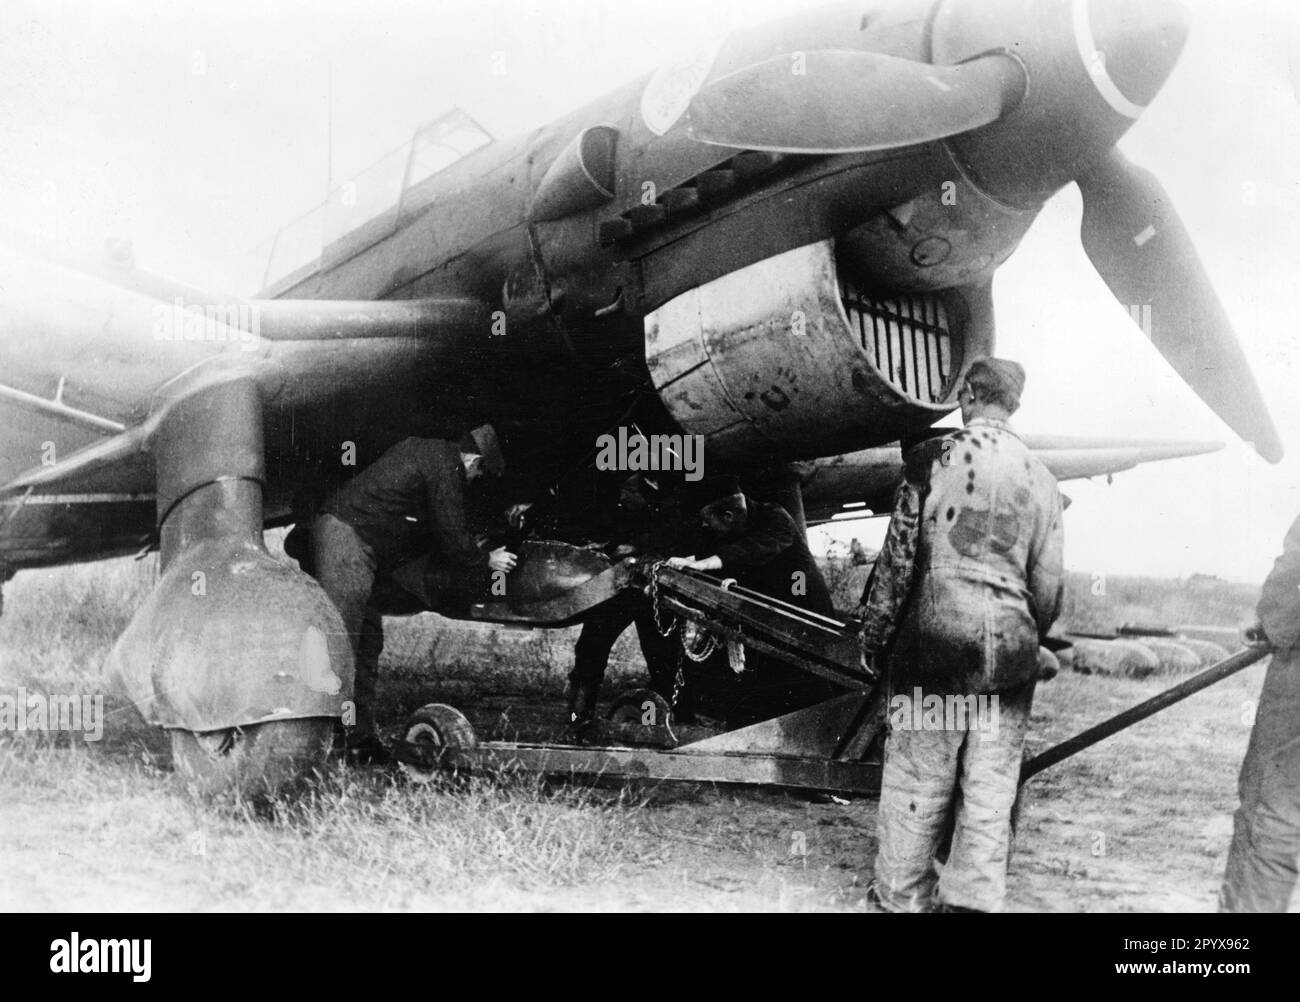 'Bodenbesatzung hängt eine Luftbombe unter dem Rumpf eines Junkers Ju 87 ''Stuka''. Foto: Jütte. [Maschinelle Übersetzung]' Stockfoto